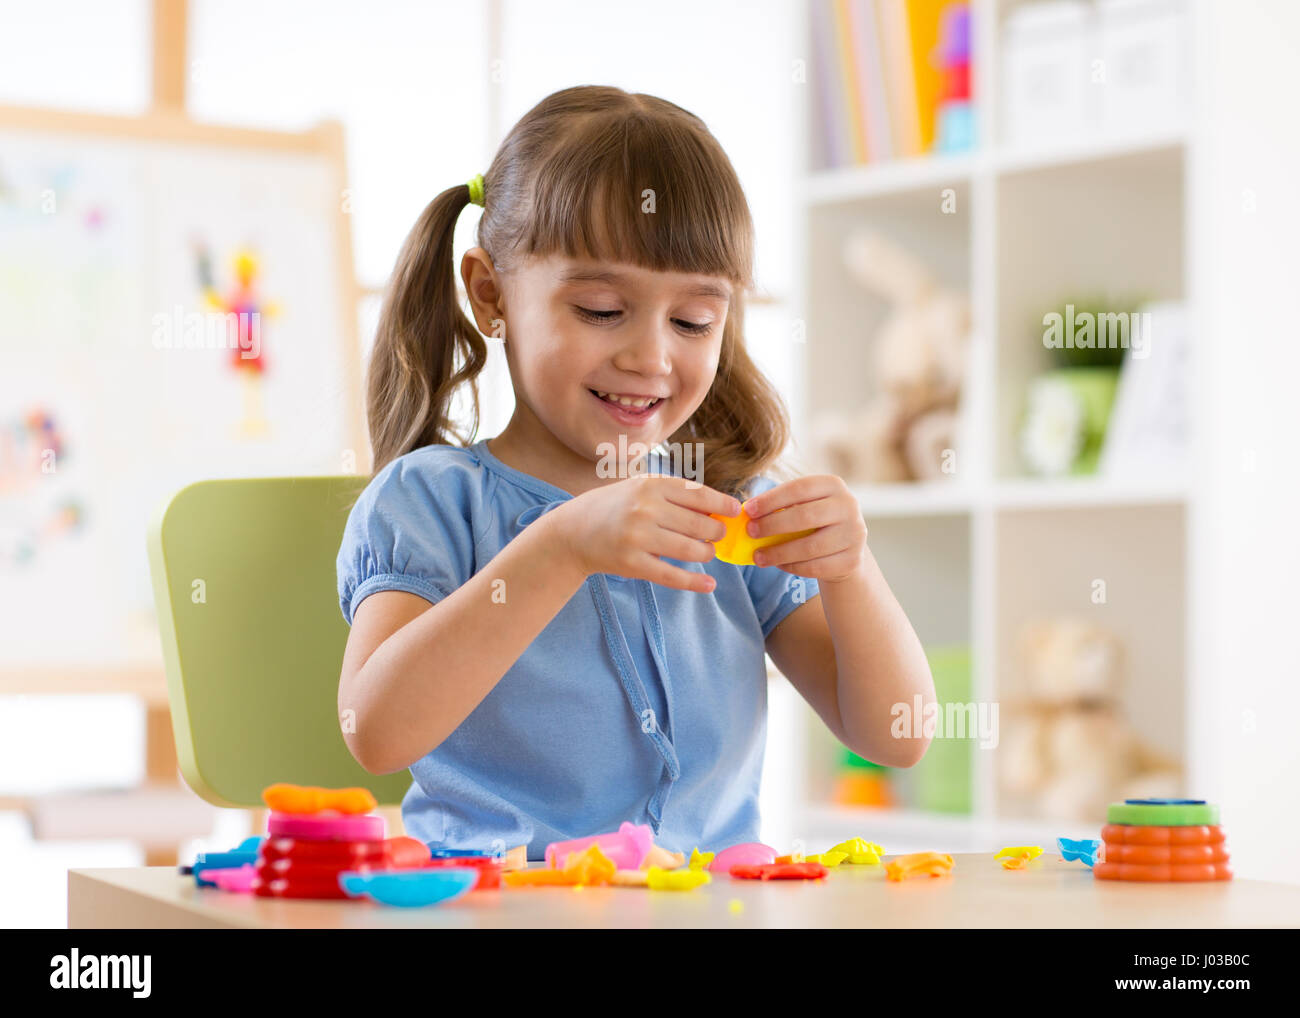 Chico Chica está jugando con plastilina mientras está sentado en la mesa Foto de stock